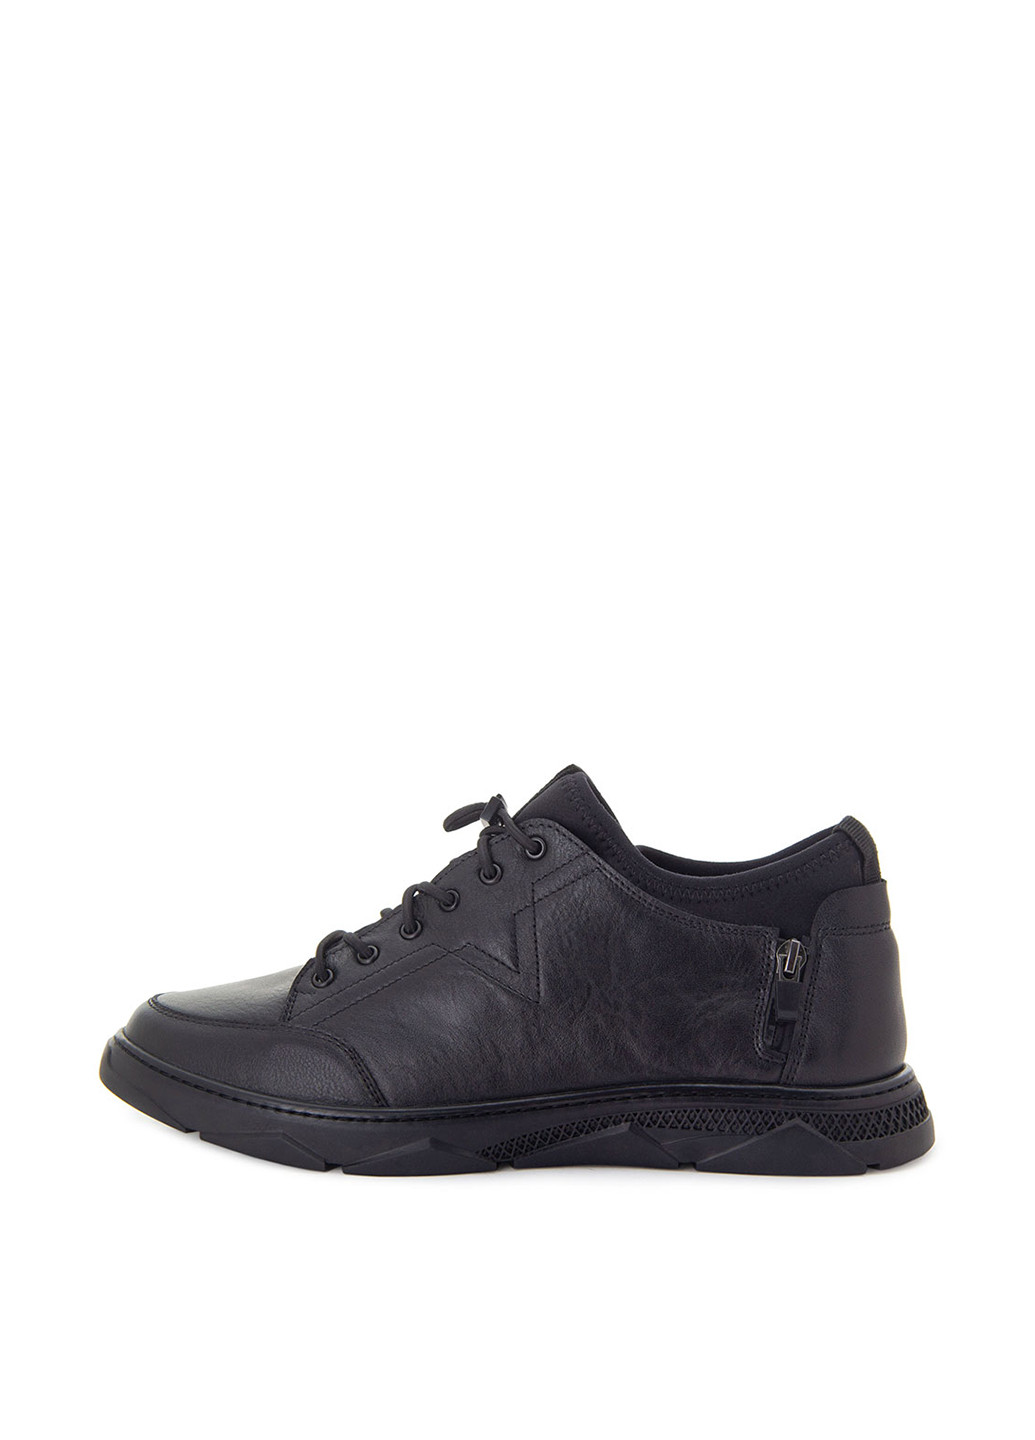 Черные осенние ботинки Tomfrie